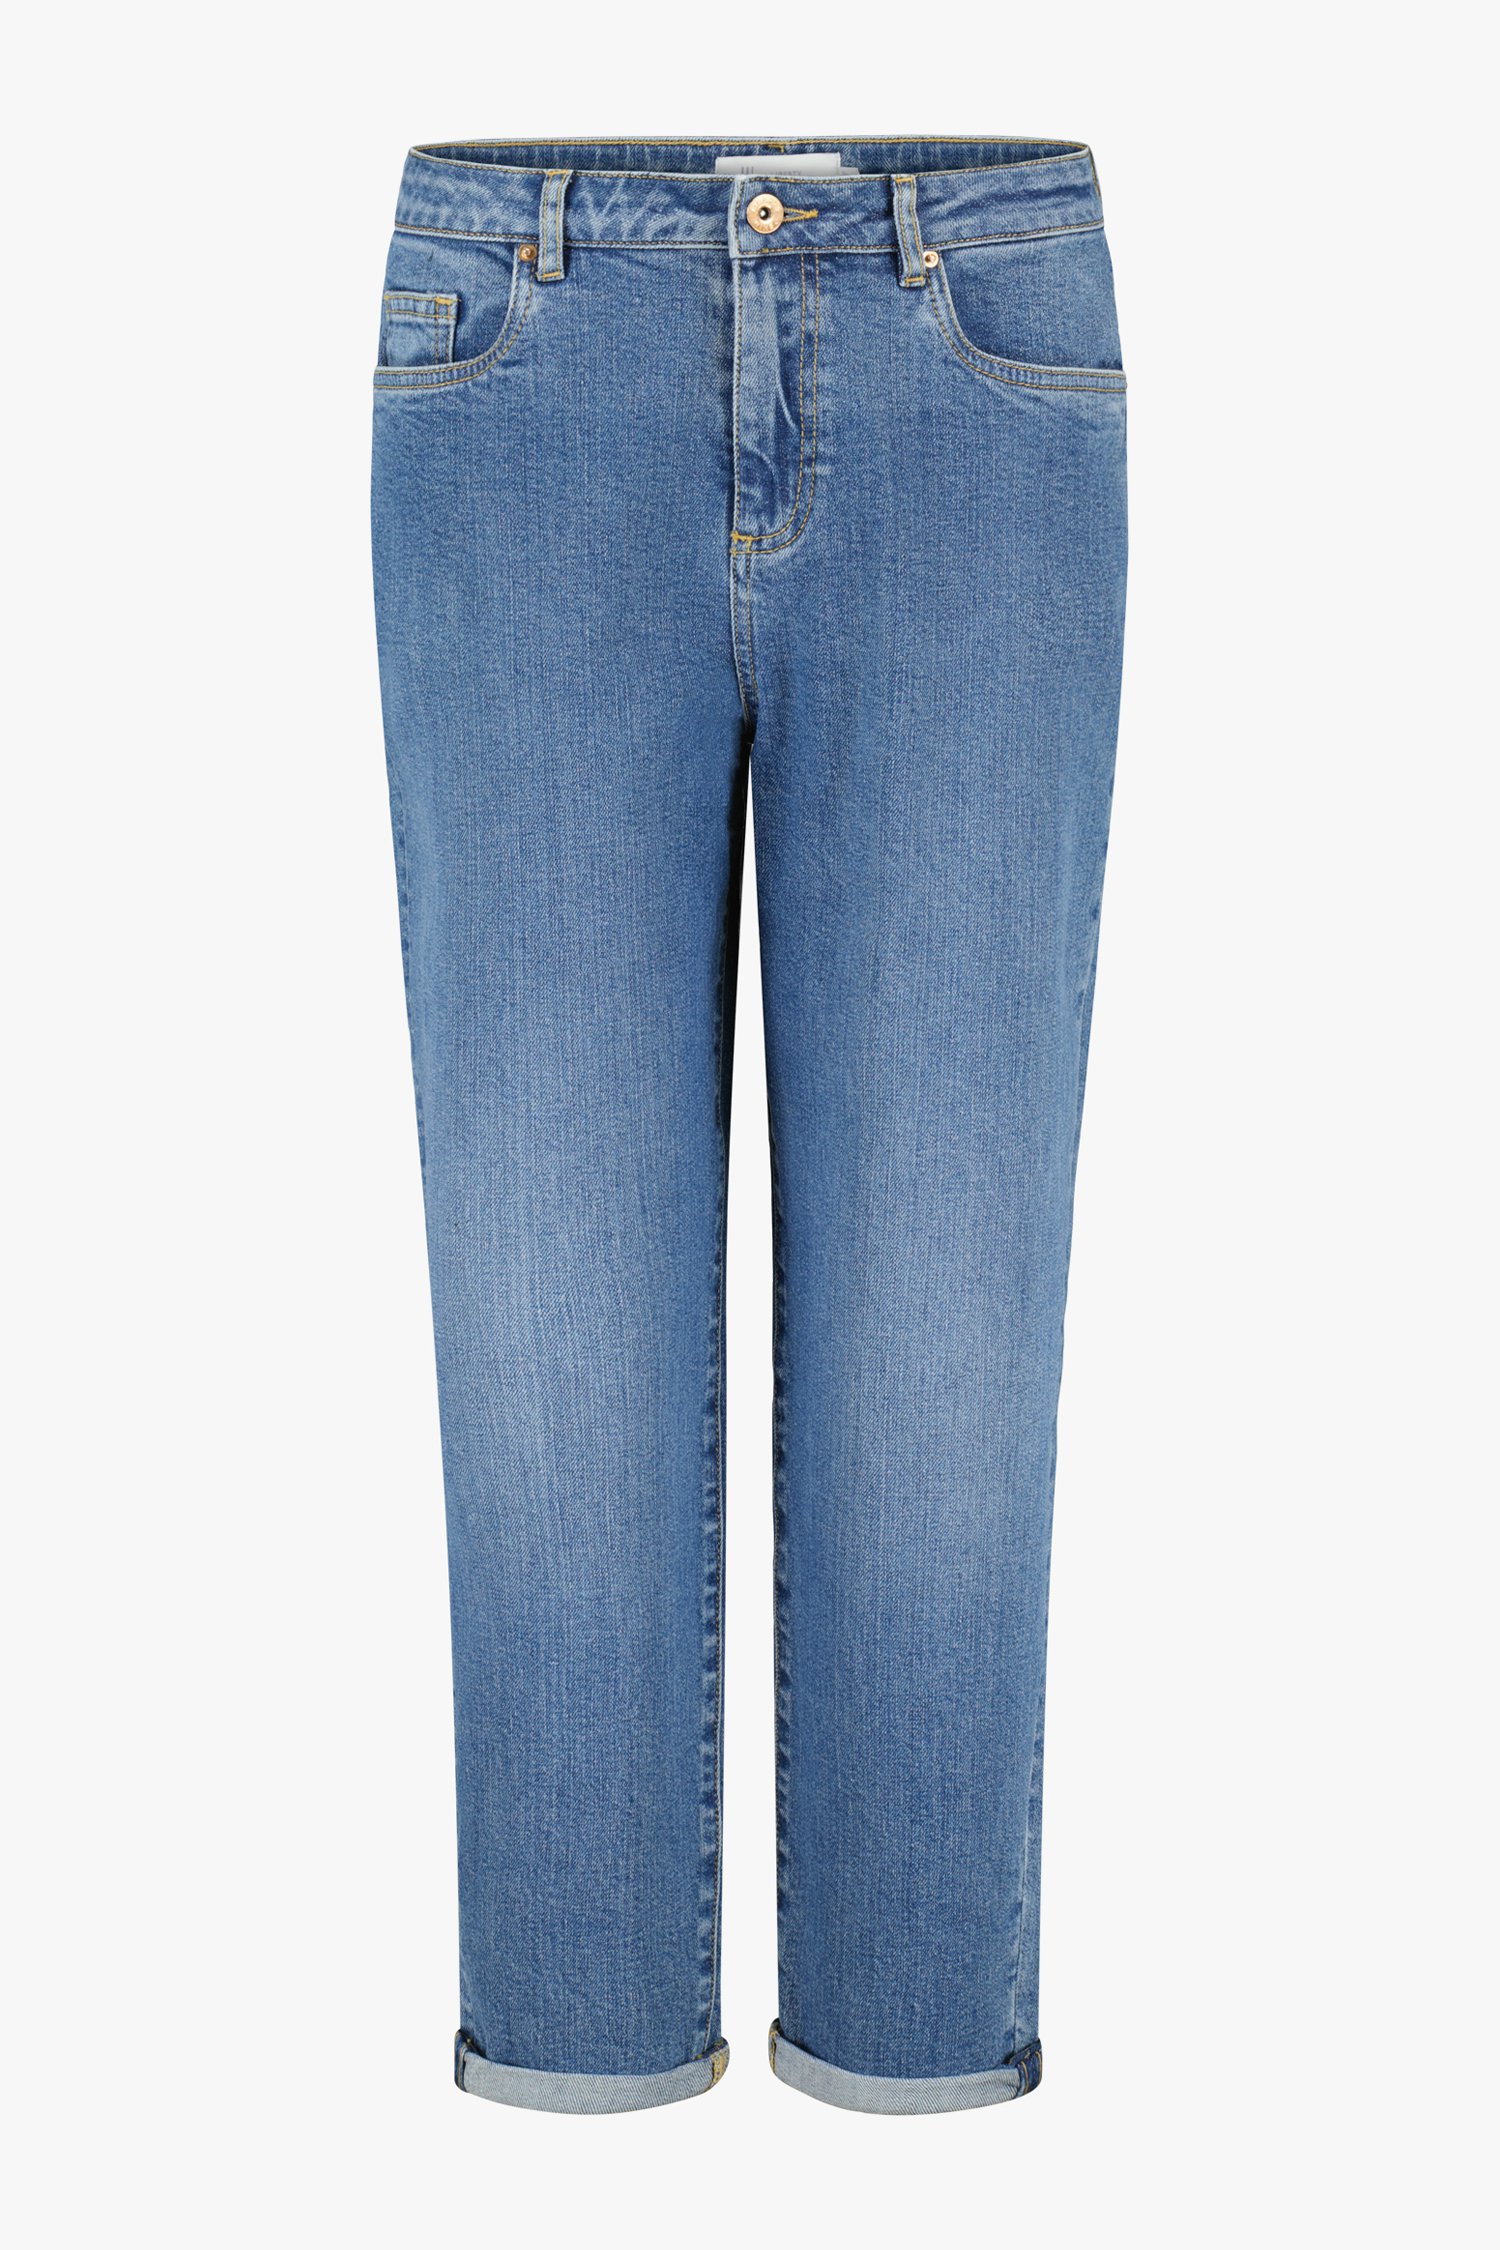 Blauwe jeans - mom fit van Liberty Island Denim voor Dames